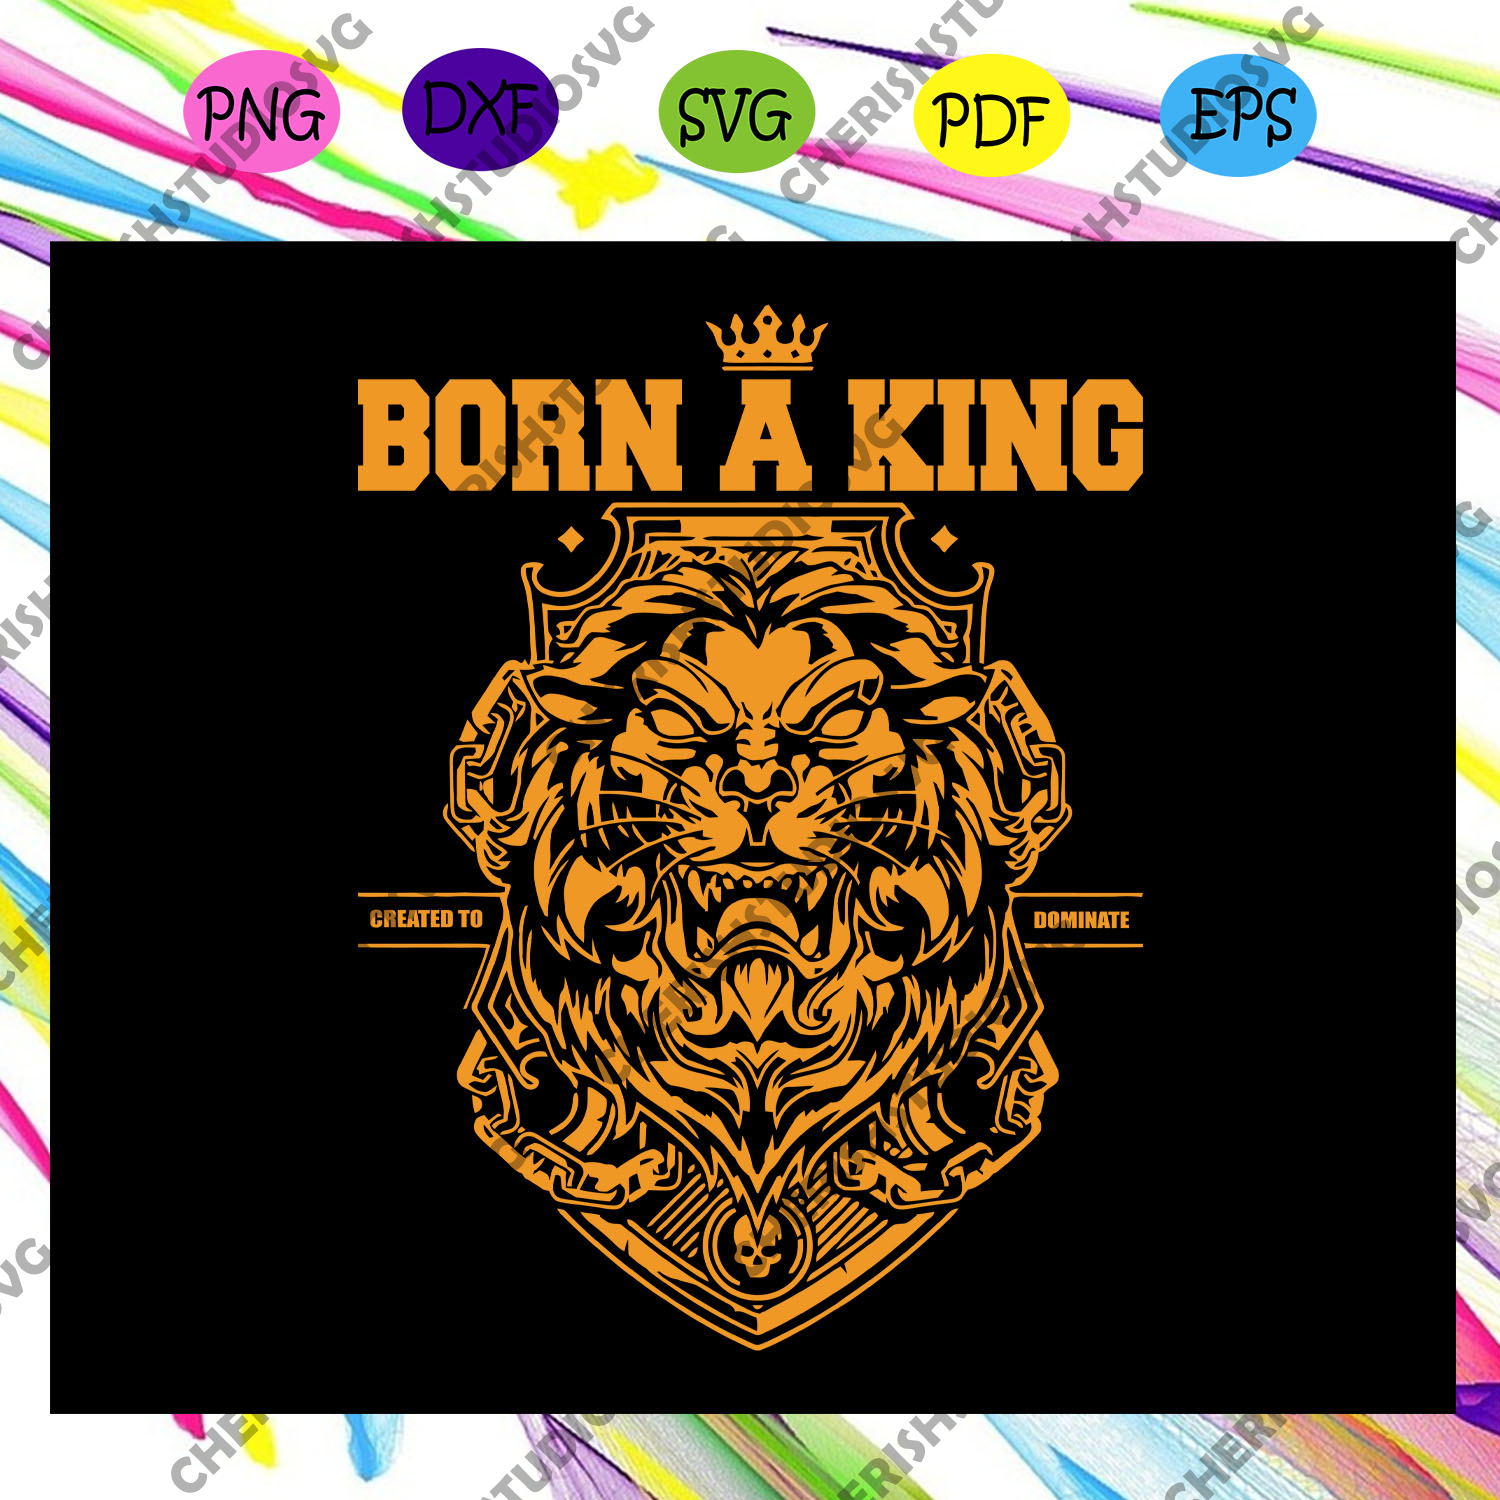 Free Free 99 Lion King Svg Download SVG PNG EPS DXF File